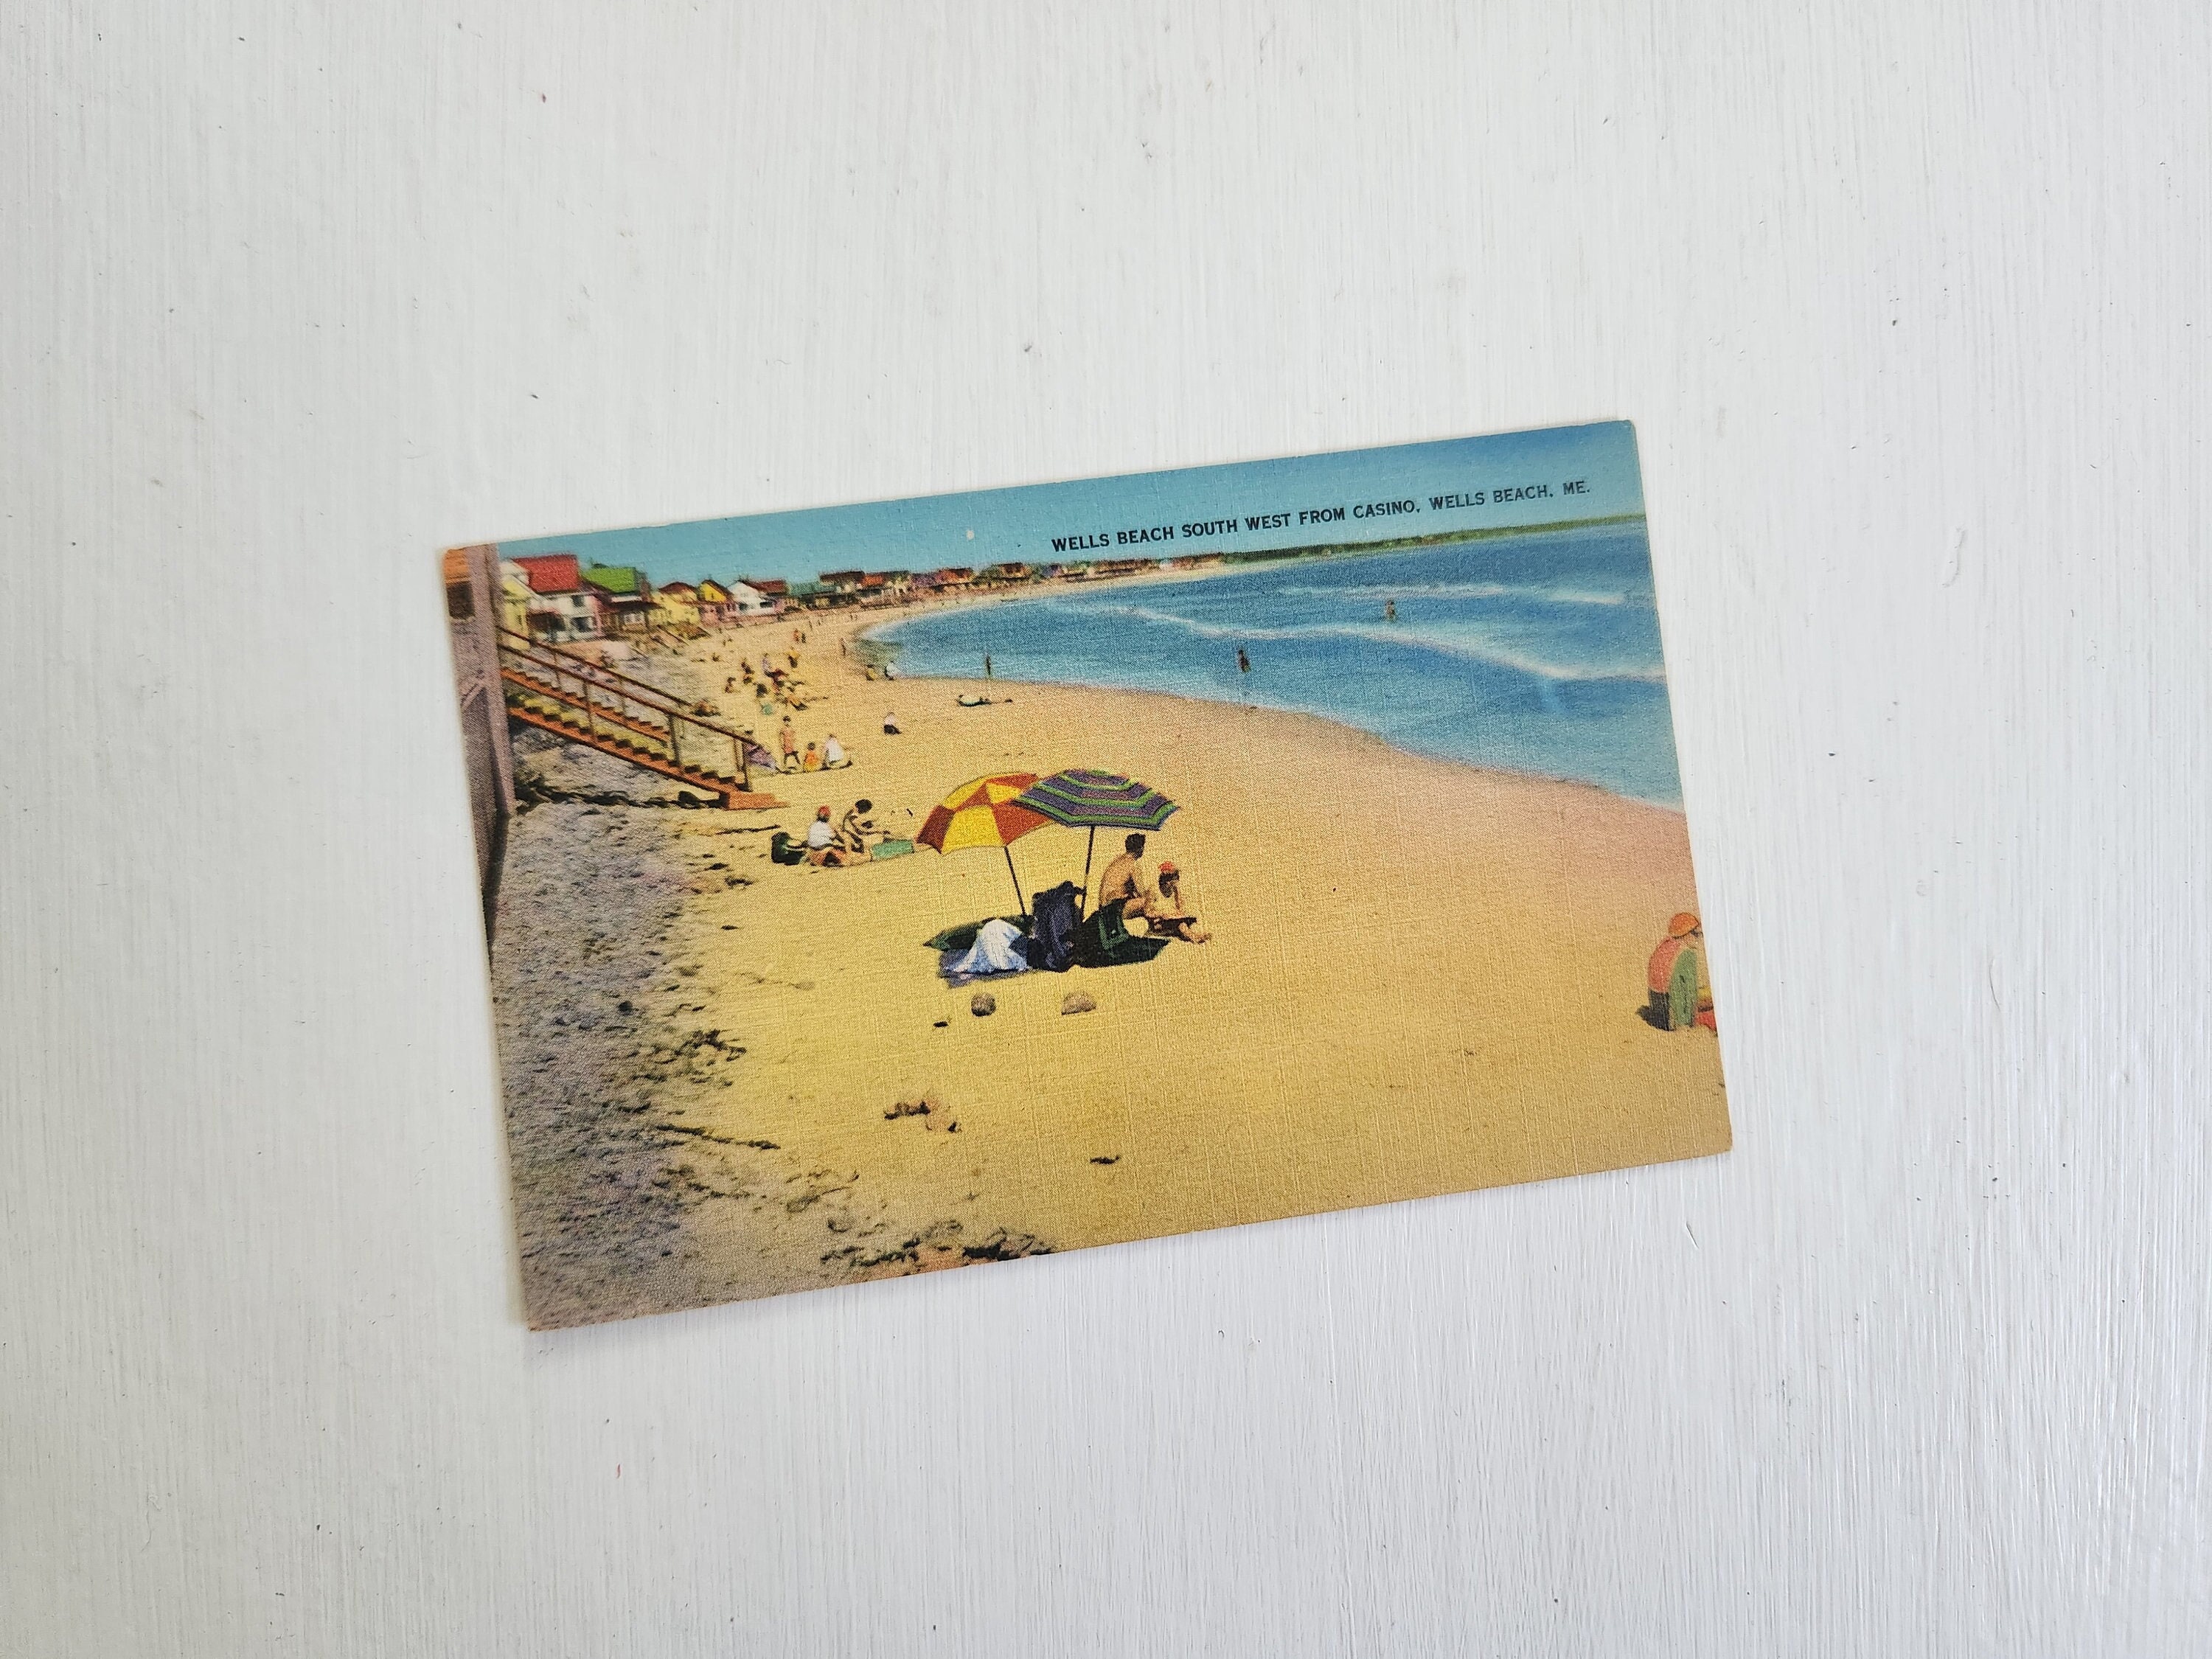 Four 4 unused postage stamps // Coastal birds // postcard rate